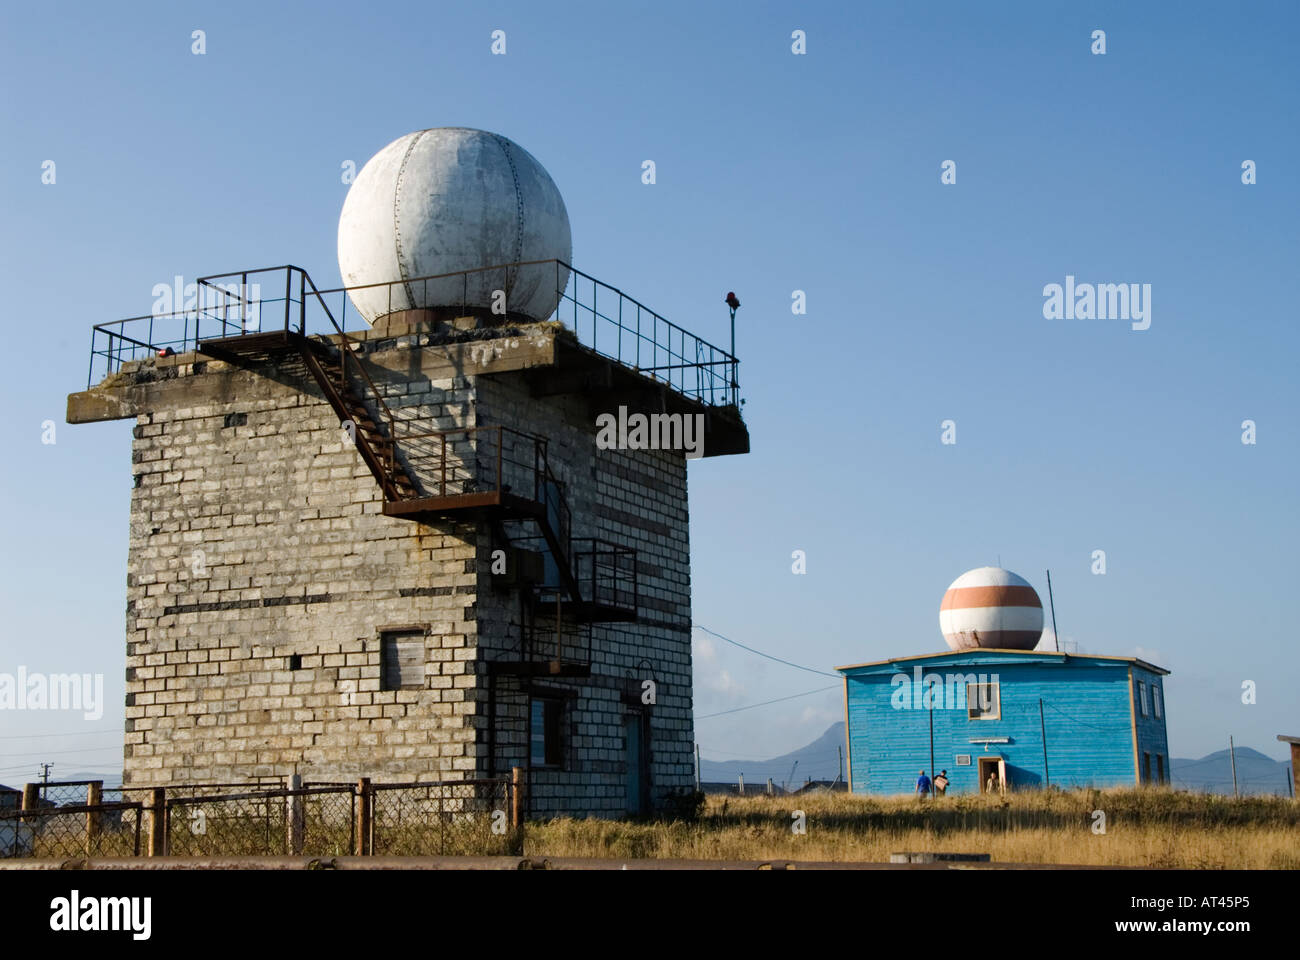 La station de poursuite d'aéronefs dans l'île de Kunashir Kurilsk Yuzhno sur les îles Kouriles Banque D'Images